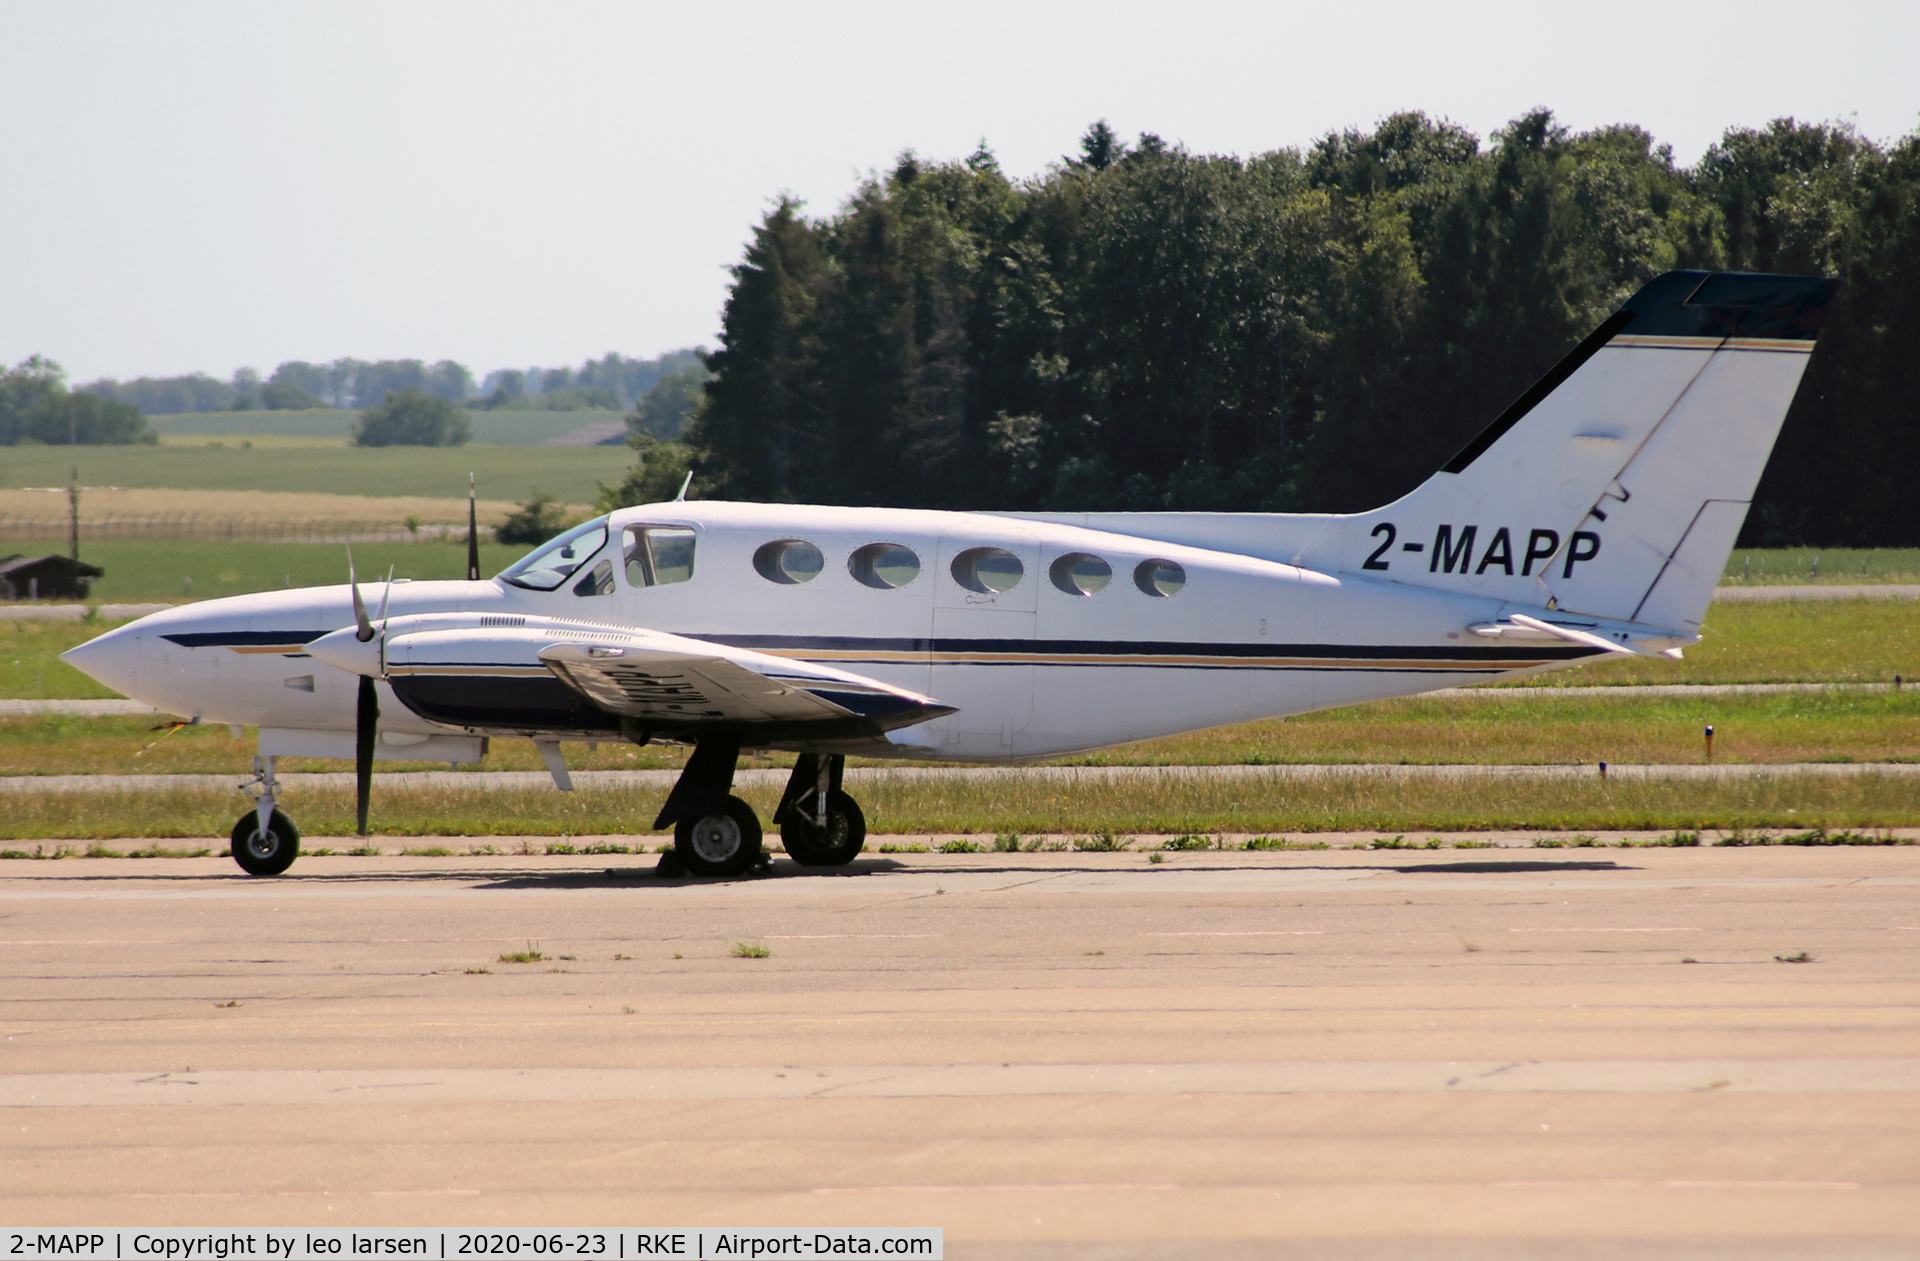 2-MAPP, 1976 Cessna 421C Golden Eagle C/N 421C0142, Roskilde 23.6.2020